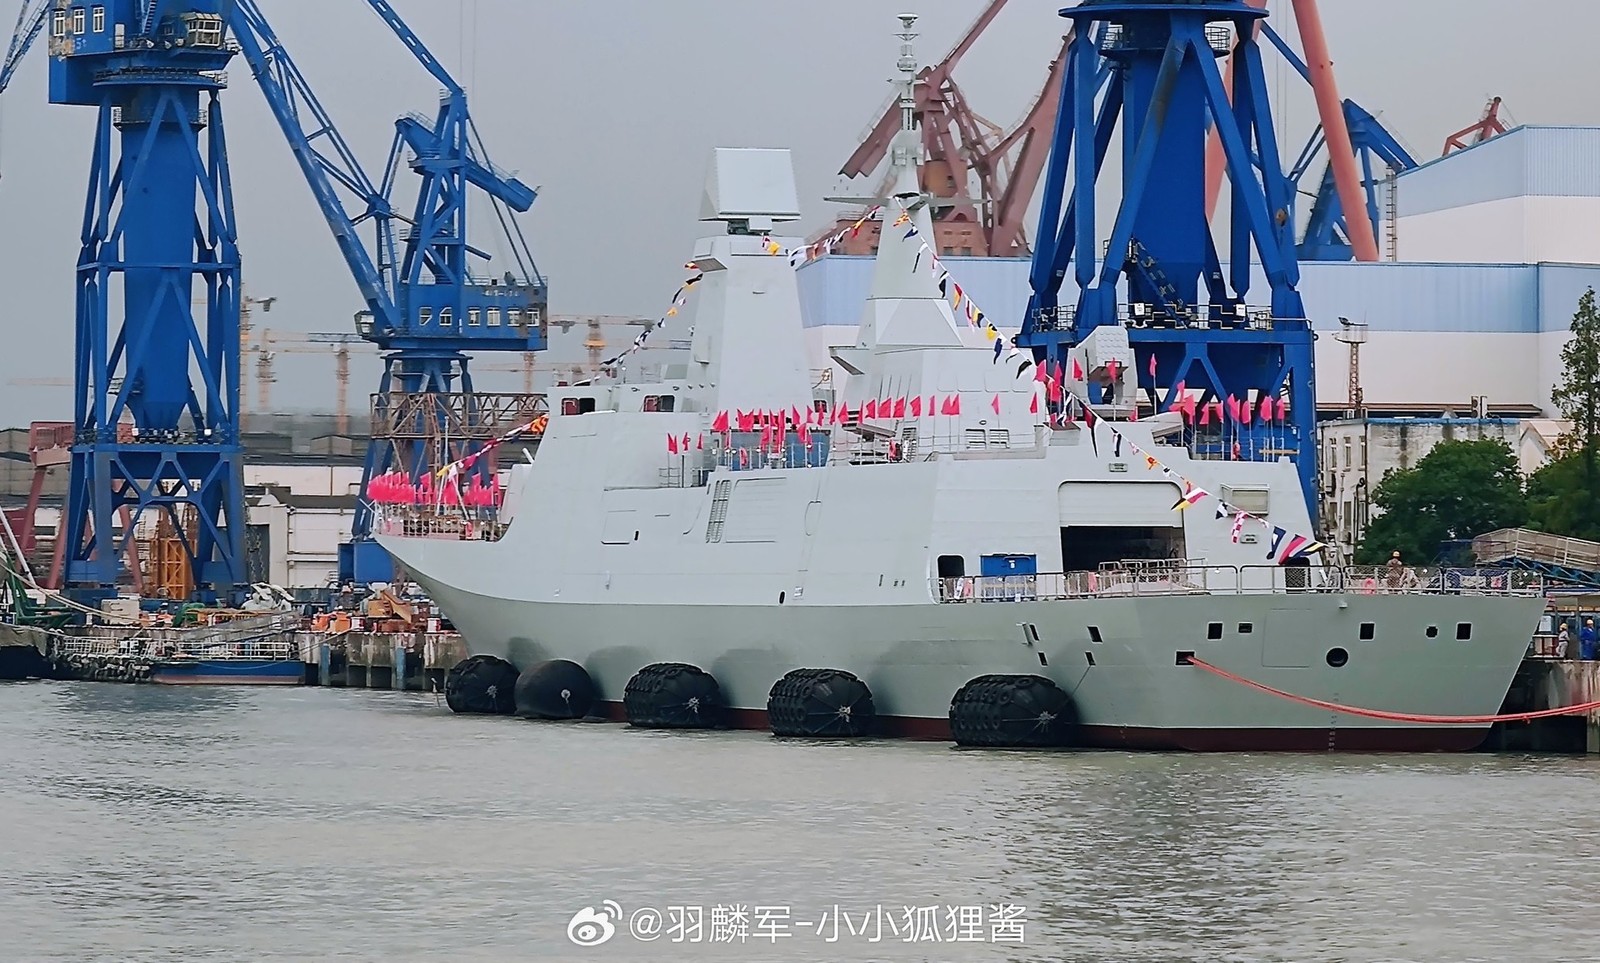 Chiny mają nowy okręt. To dzieło stanie się podstawą chińskiej marynarki wojennej